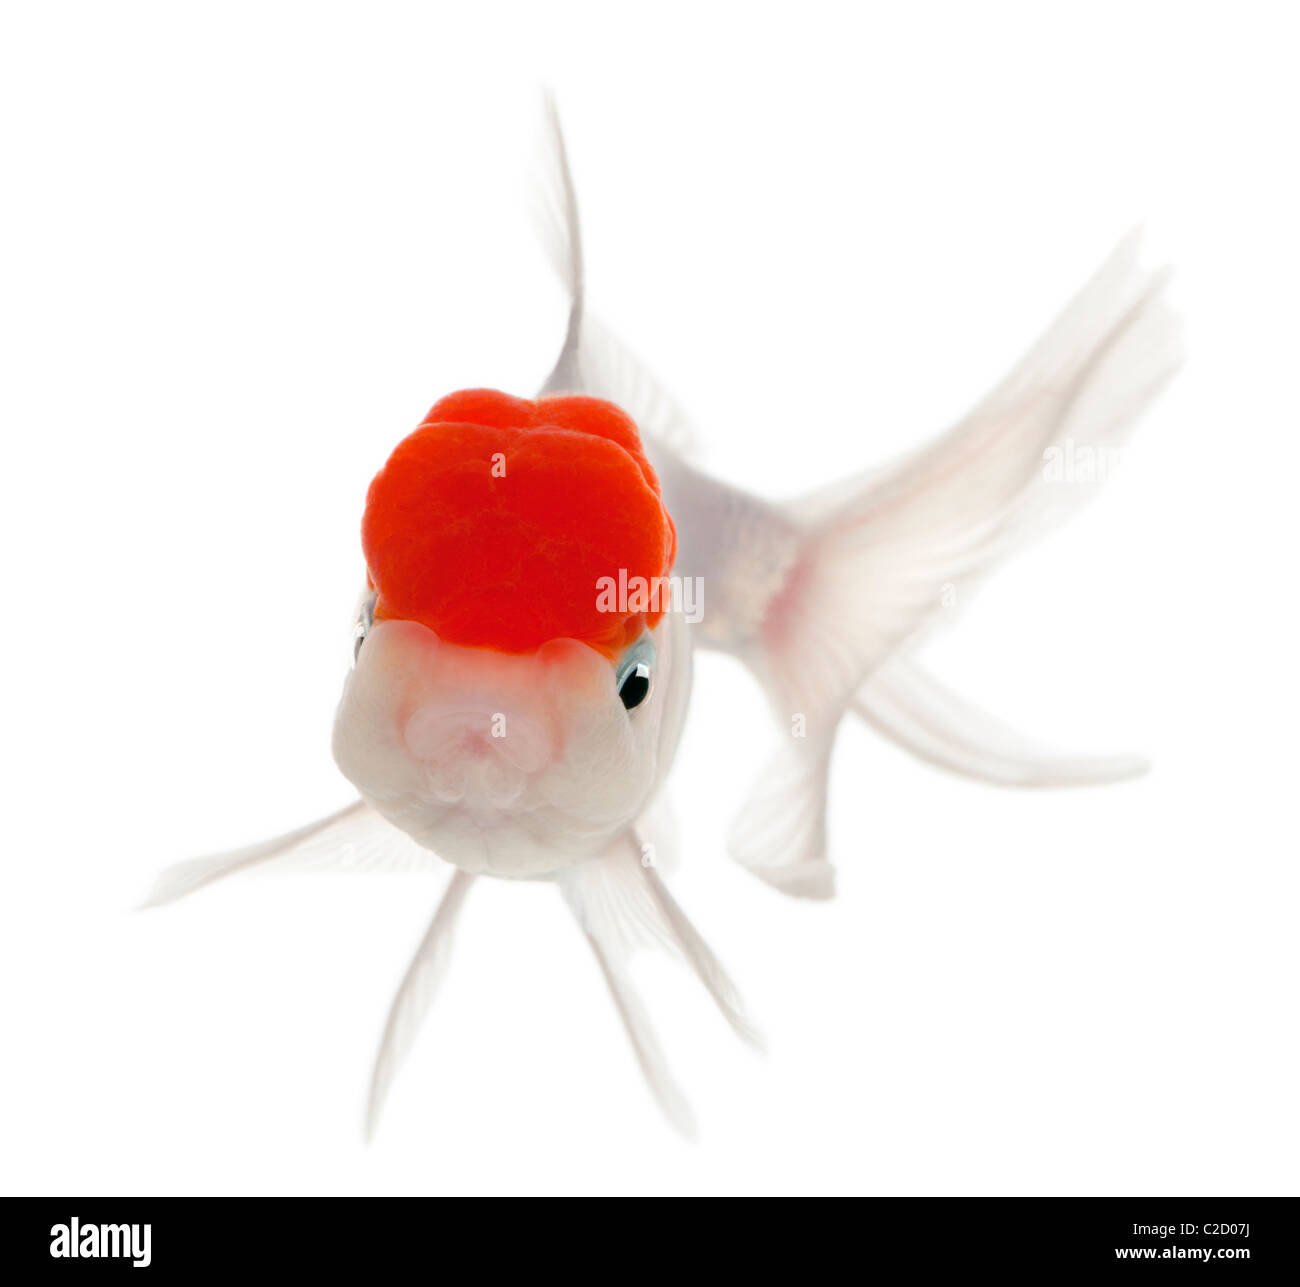 Lionhead goldfish, Carassius auratus, di fronte a uno sfondo bianco Foto Stock